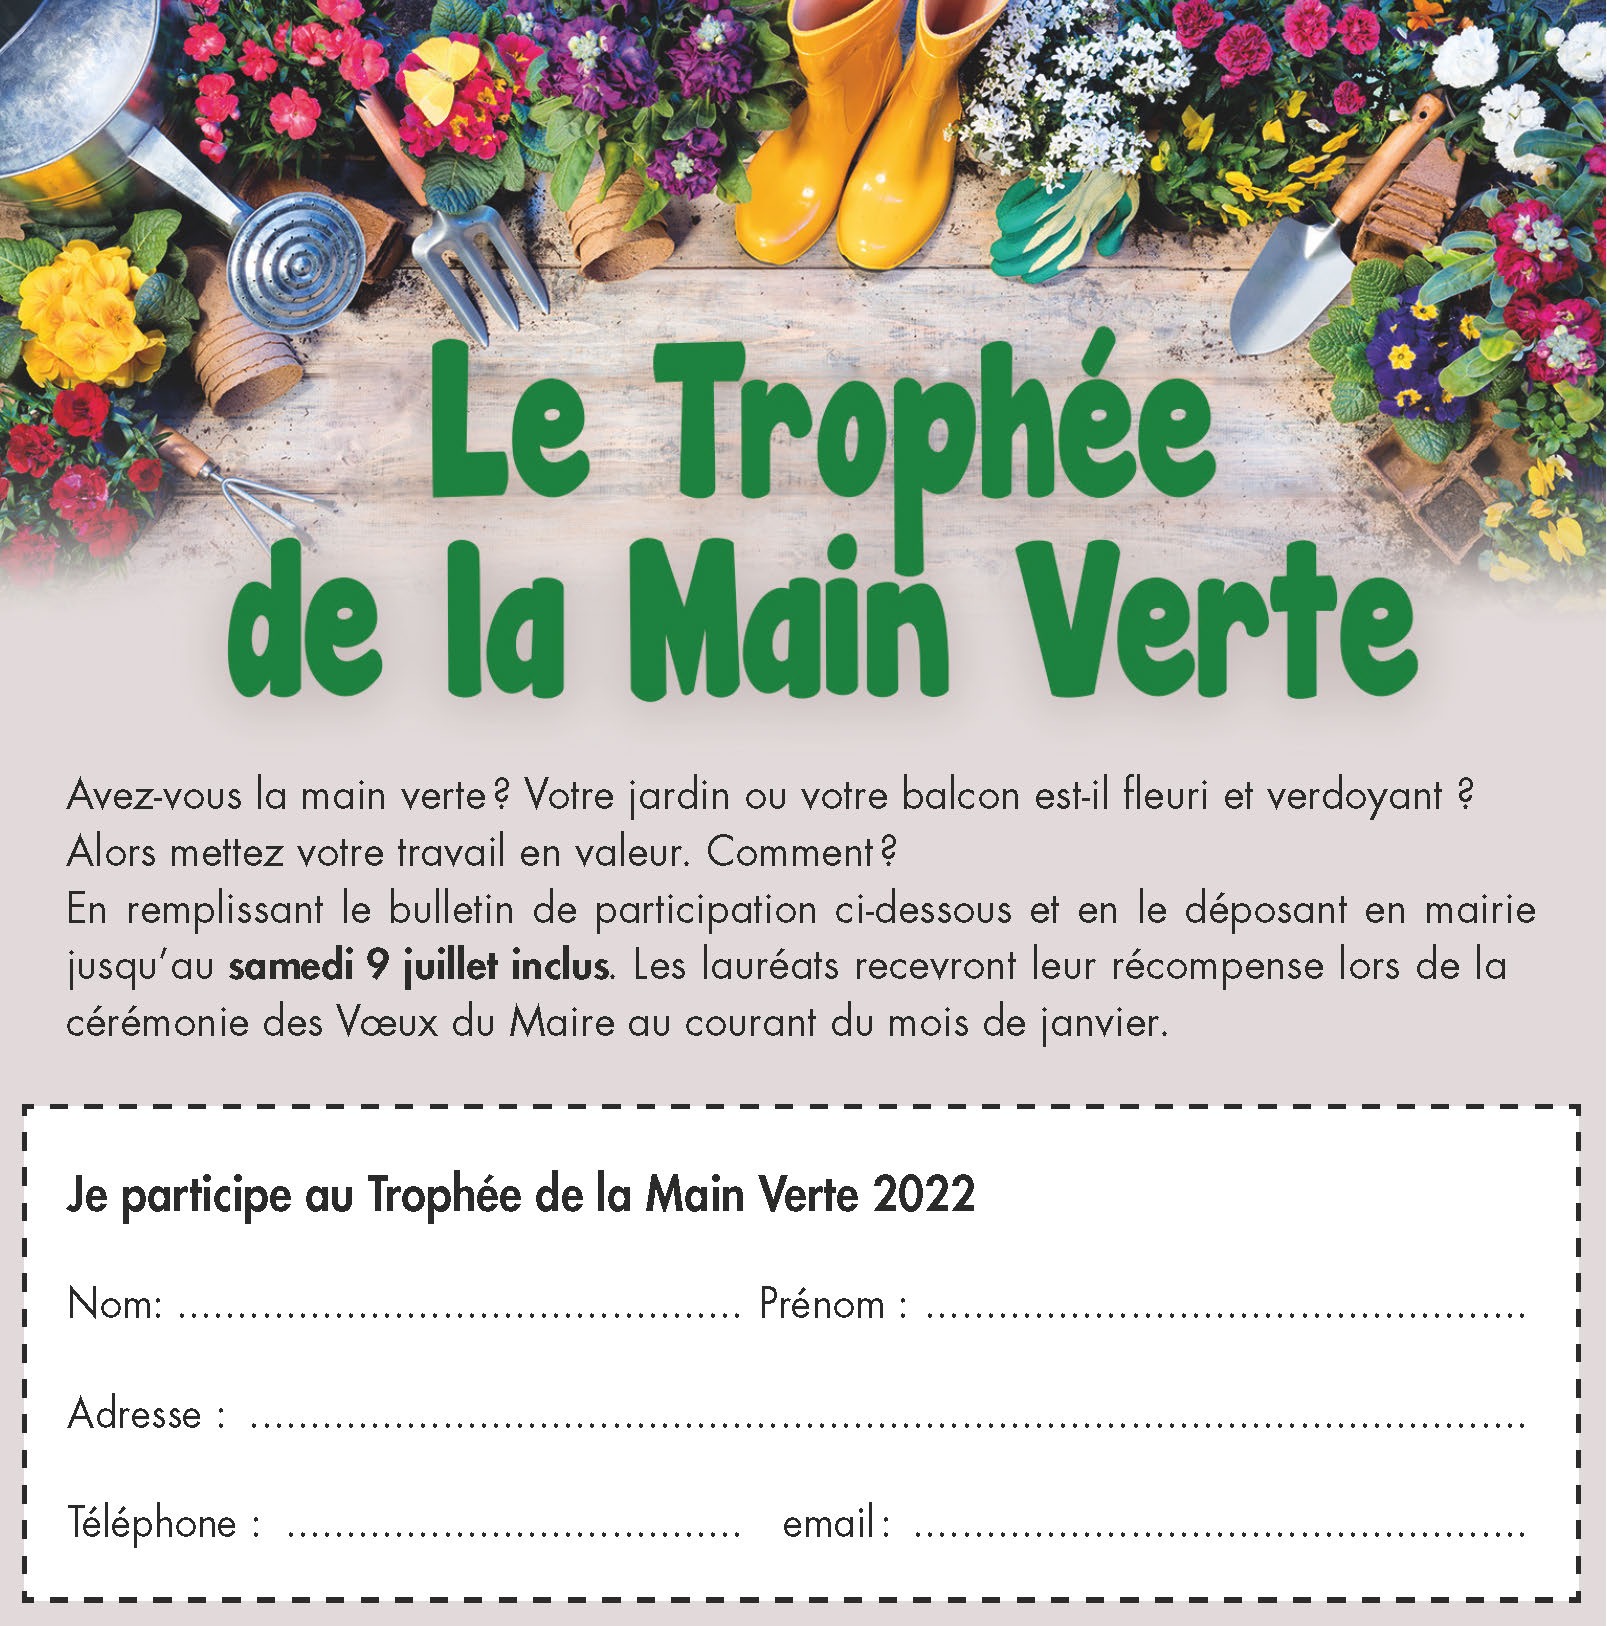 TROPHEE DE LA MAIN VERTE_2022 - form